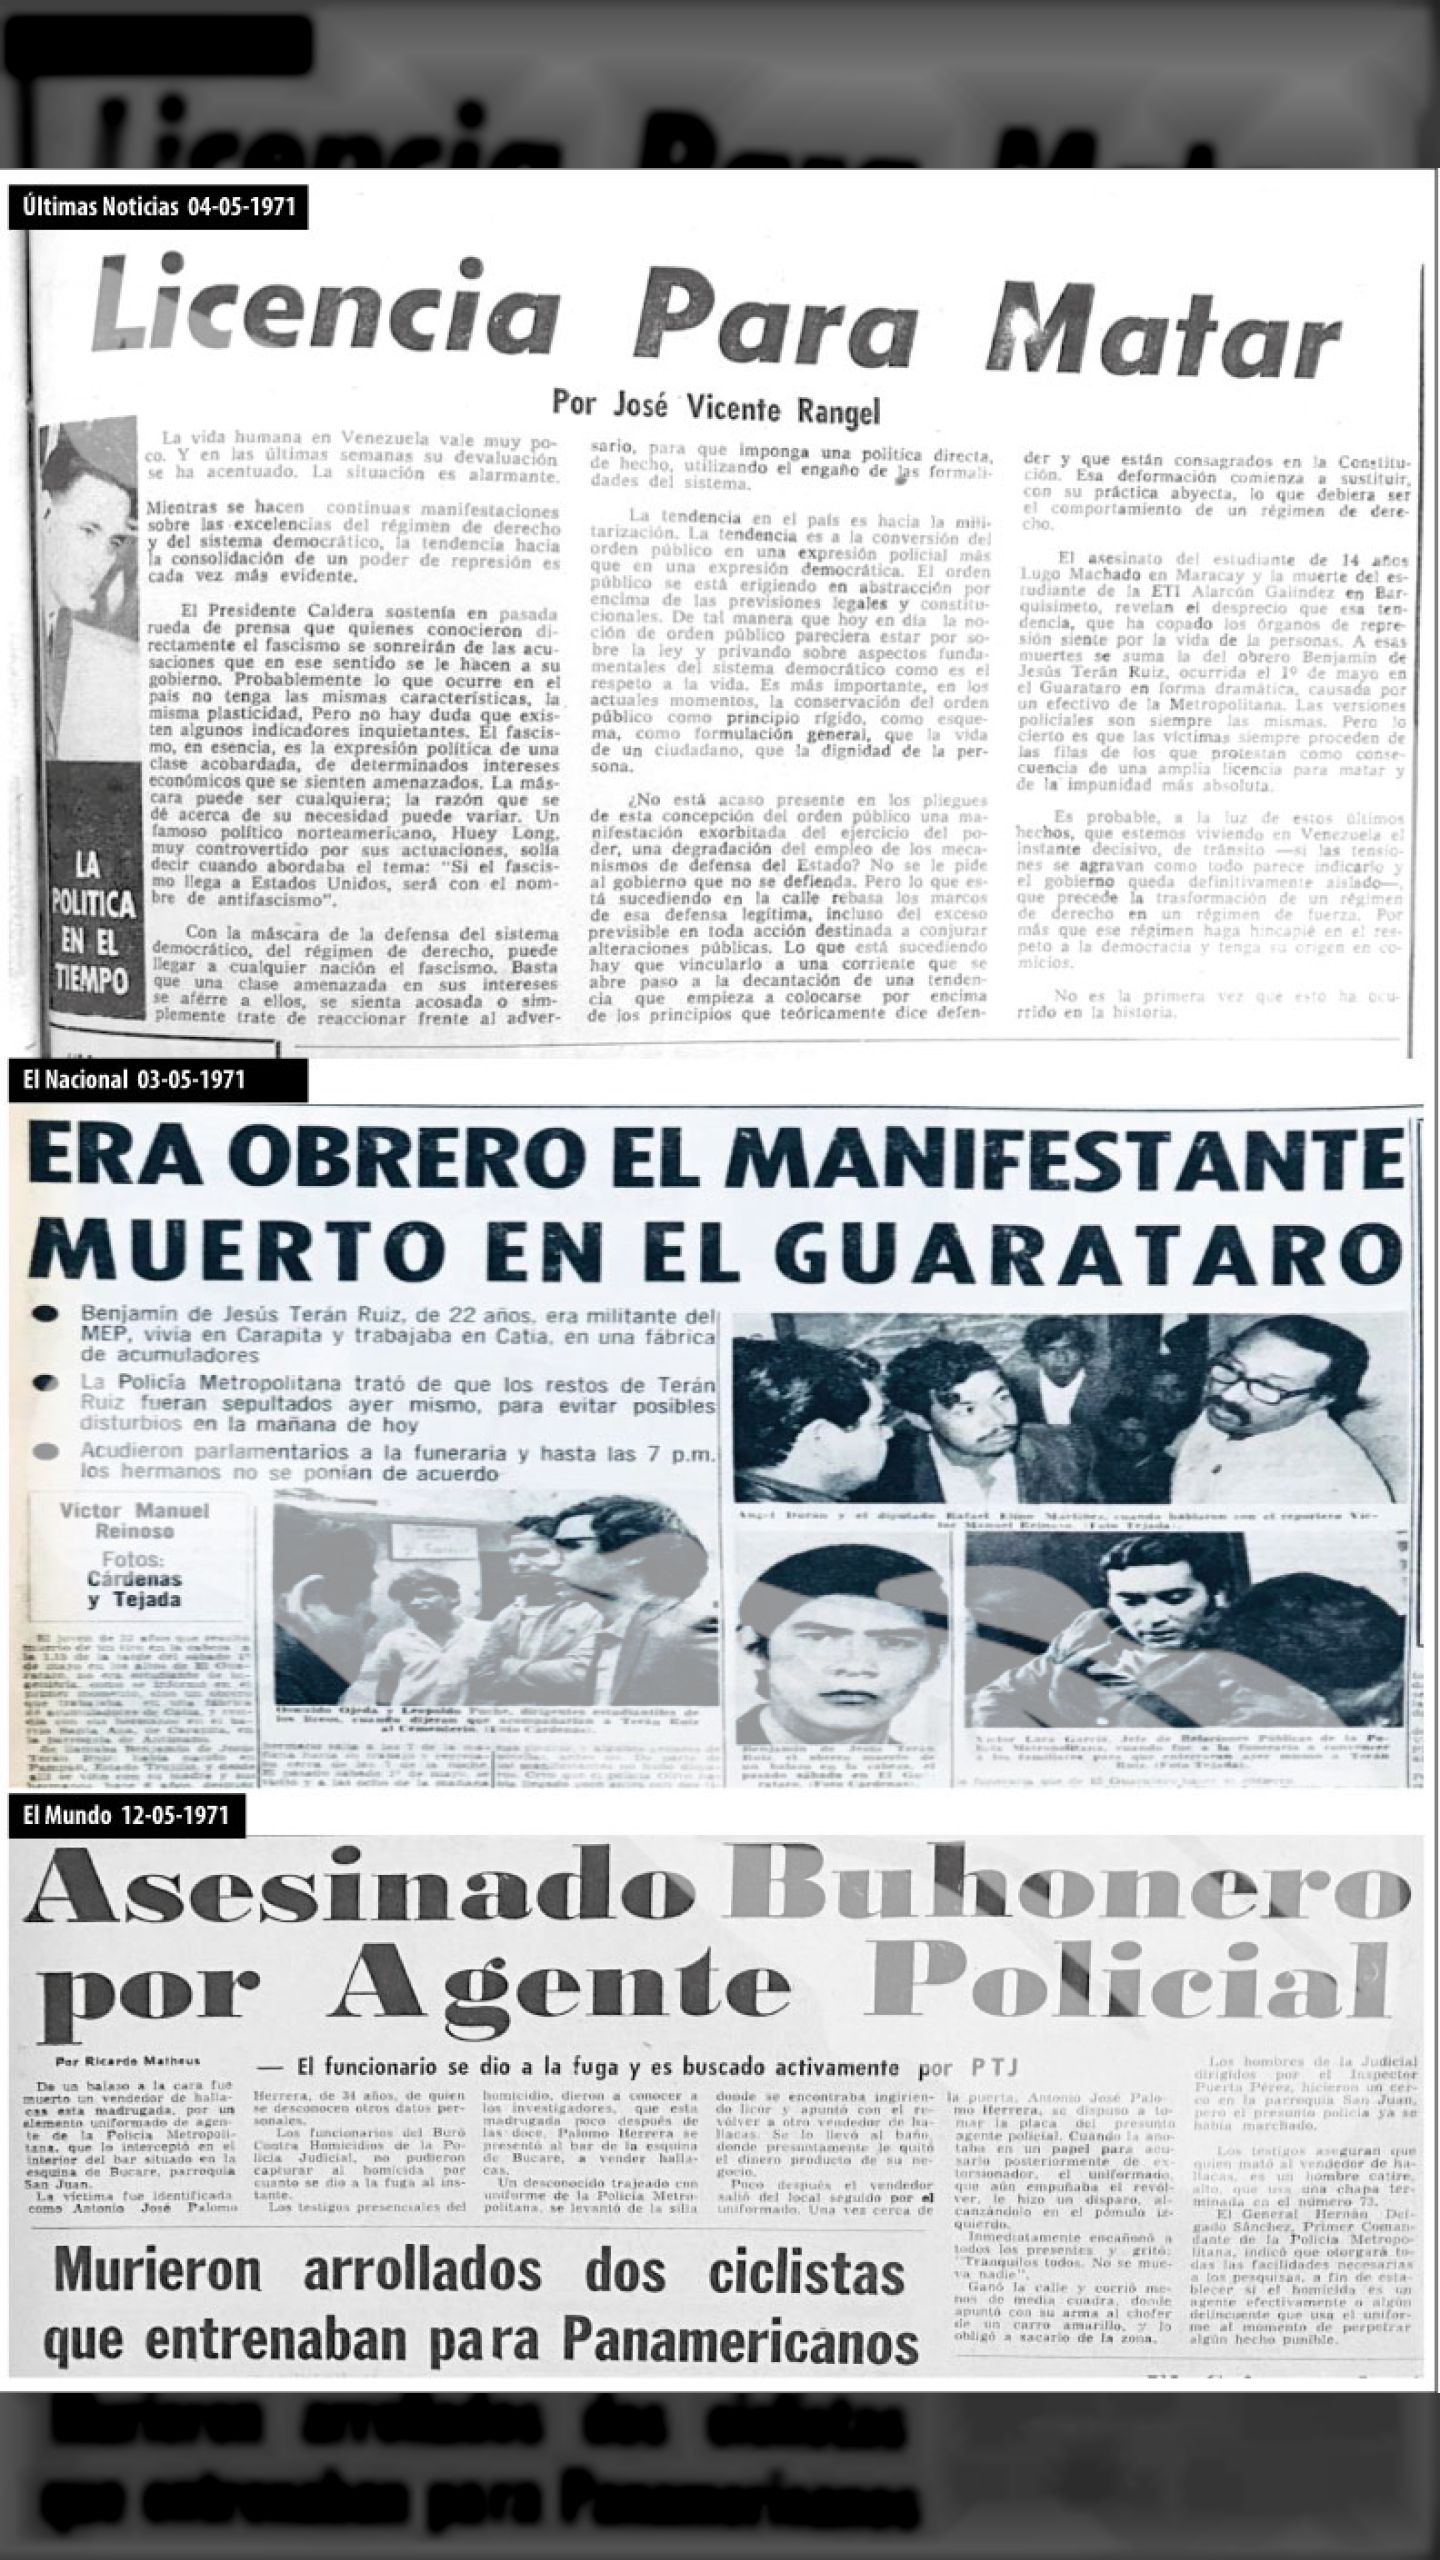 LICENCIA PARA MATAR (Últimas Noticias, 04 de mayo de 1971 + El Nacional, 3 y 14 de mayo 1971)